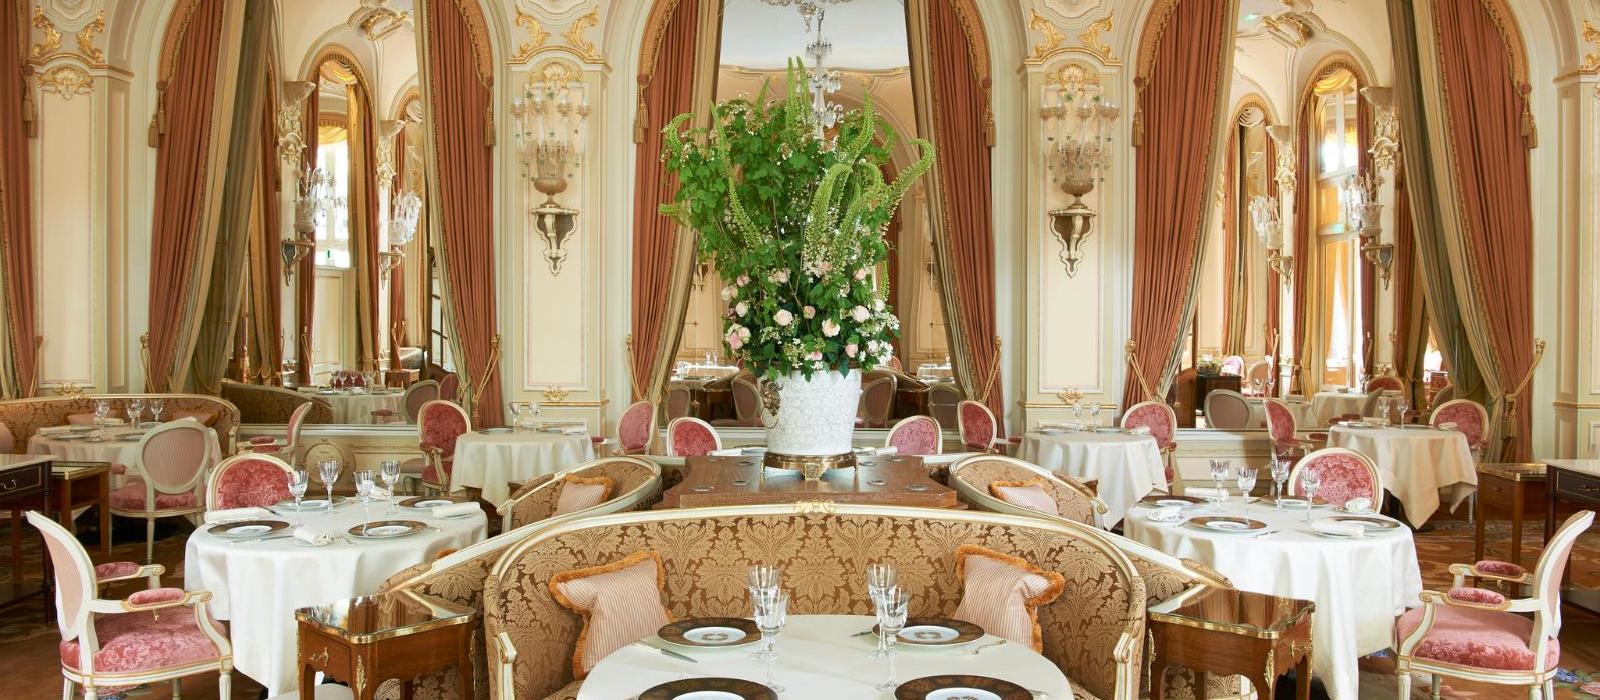 巴黎丽兹酒店(Ritz Paris) L Espadon 餐厅图片  www.lhw.cn